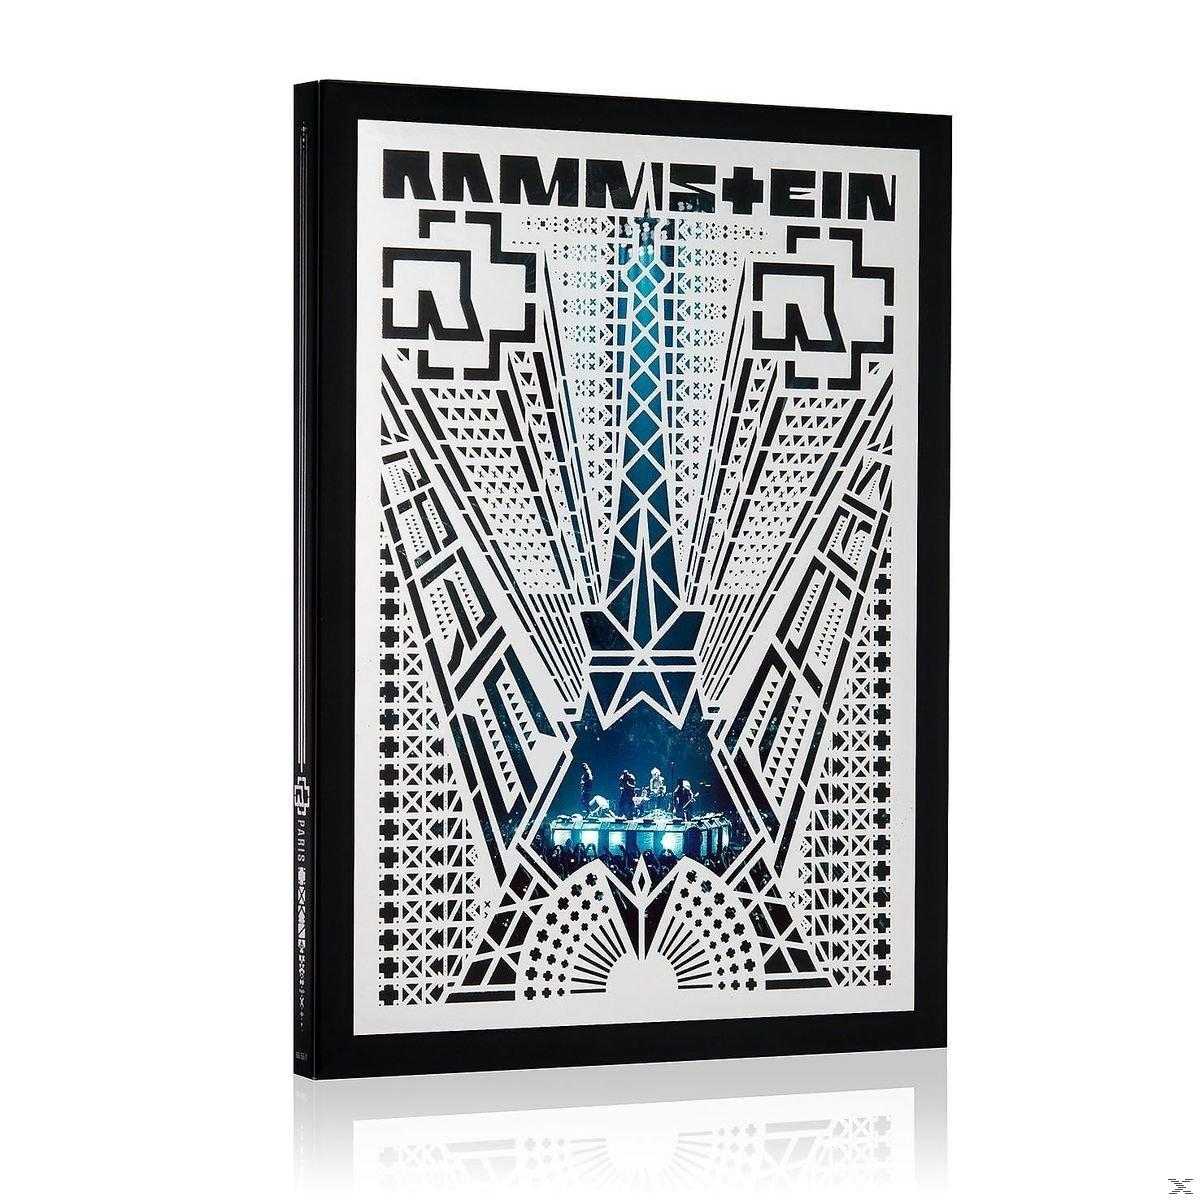 Rammstein - (Blu-ray) Paris Edt.) - Rammstein: (Standard